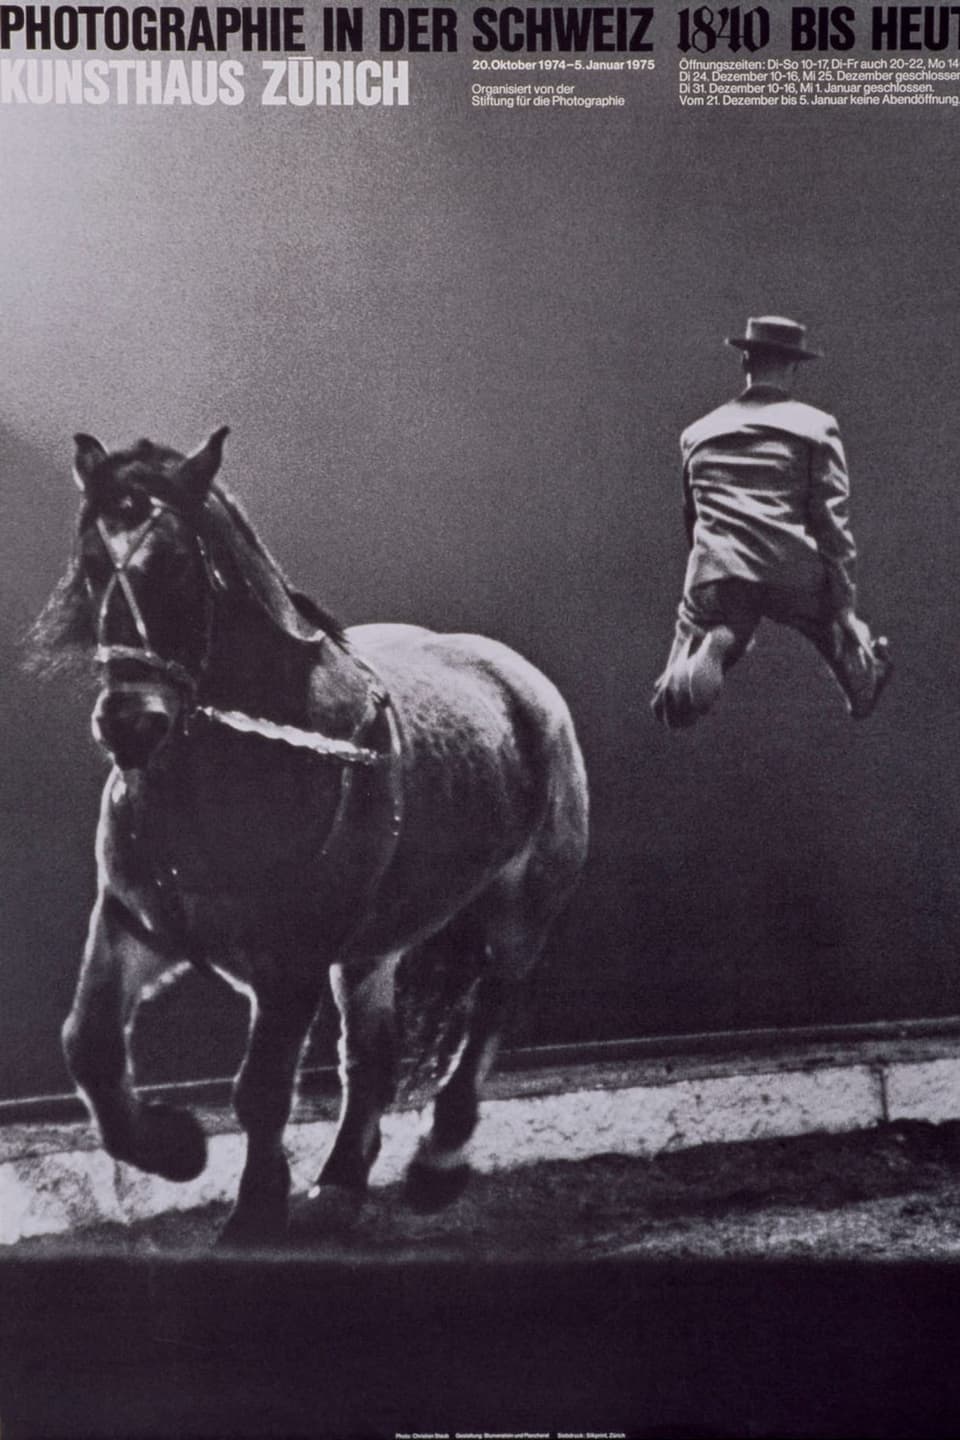 Schwarzs-Weiss-Bild von einem Ross und Menschen in der Luft im Zirkus